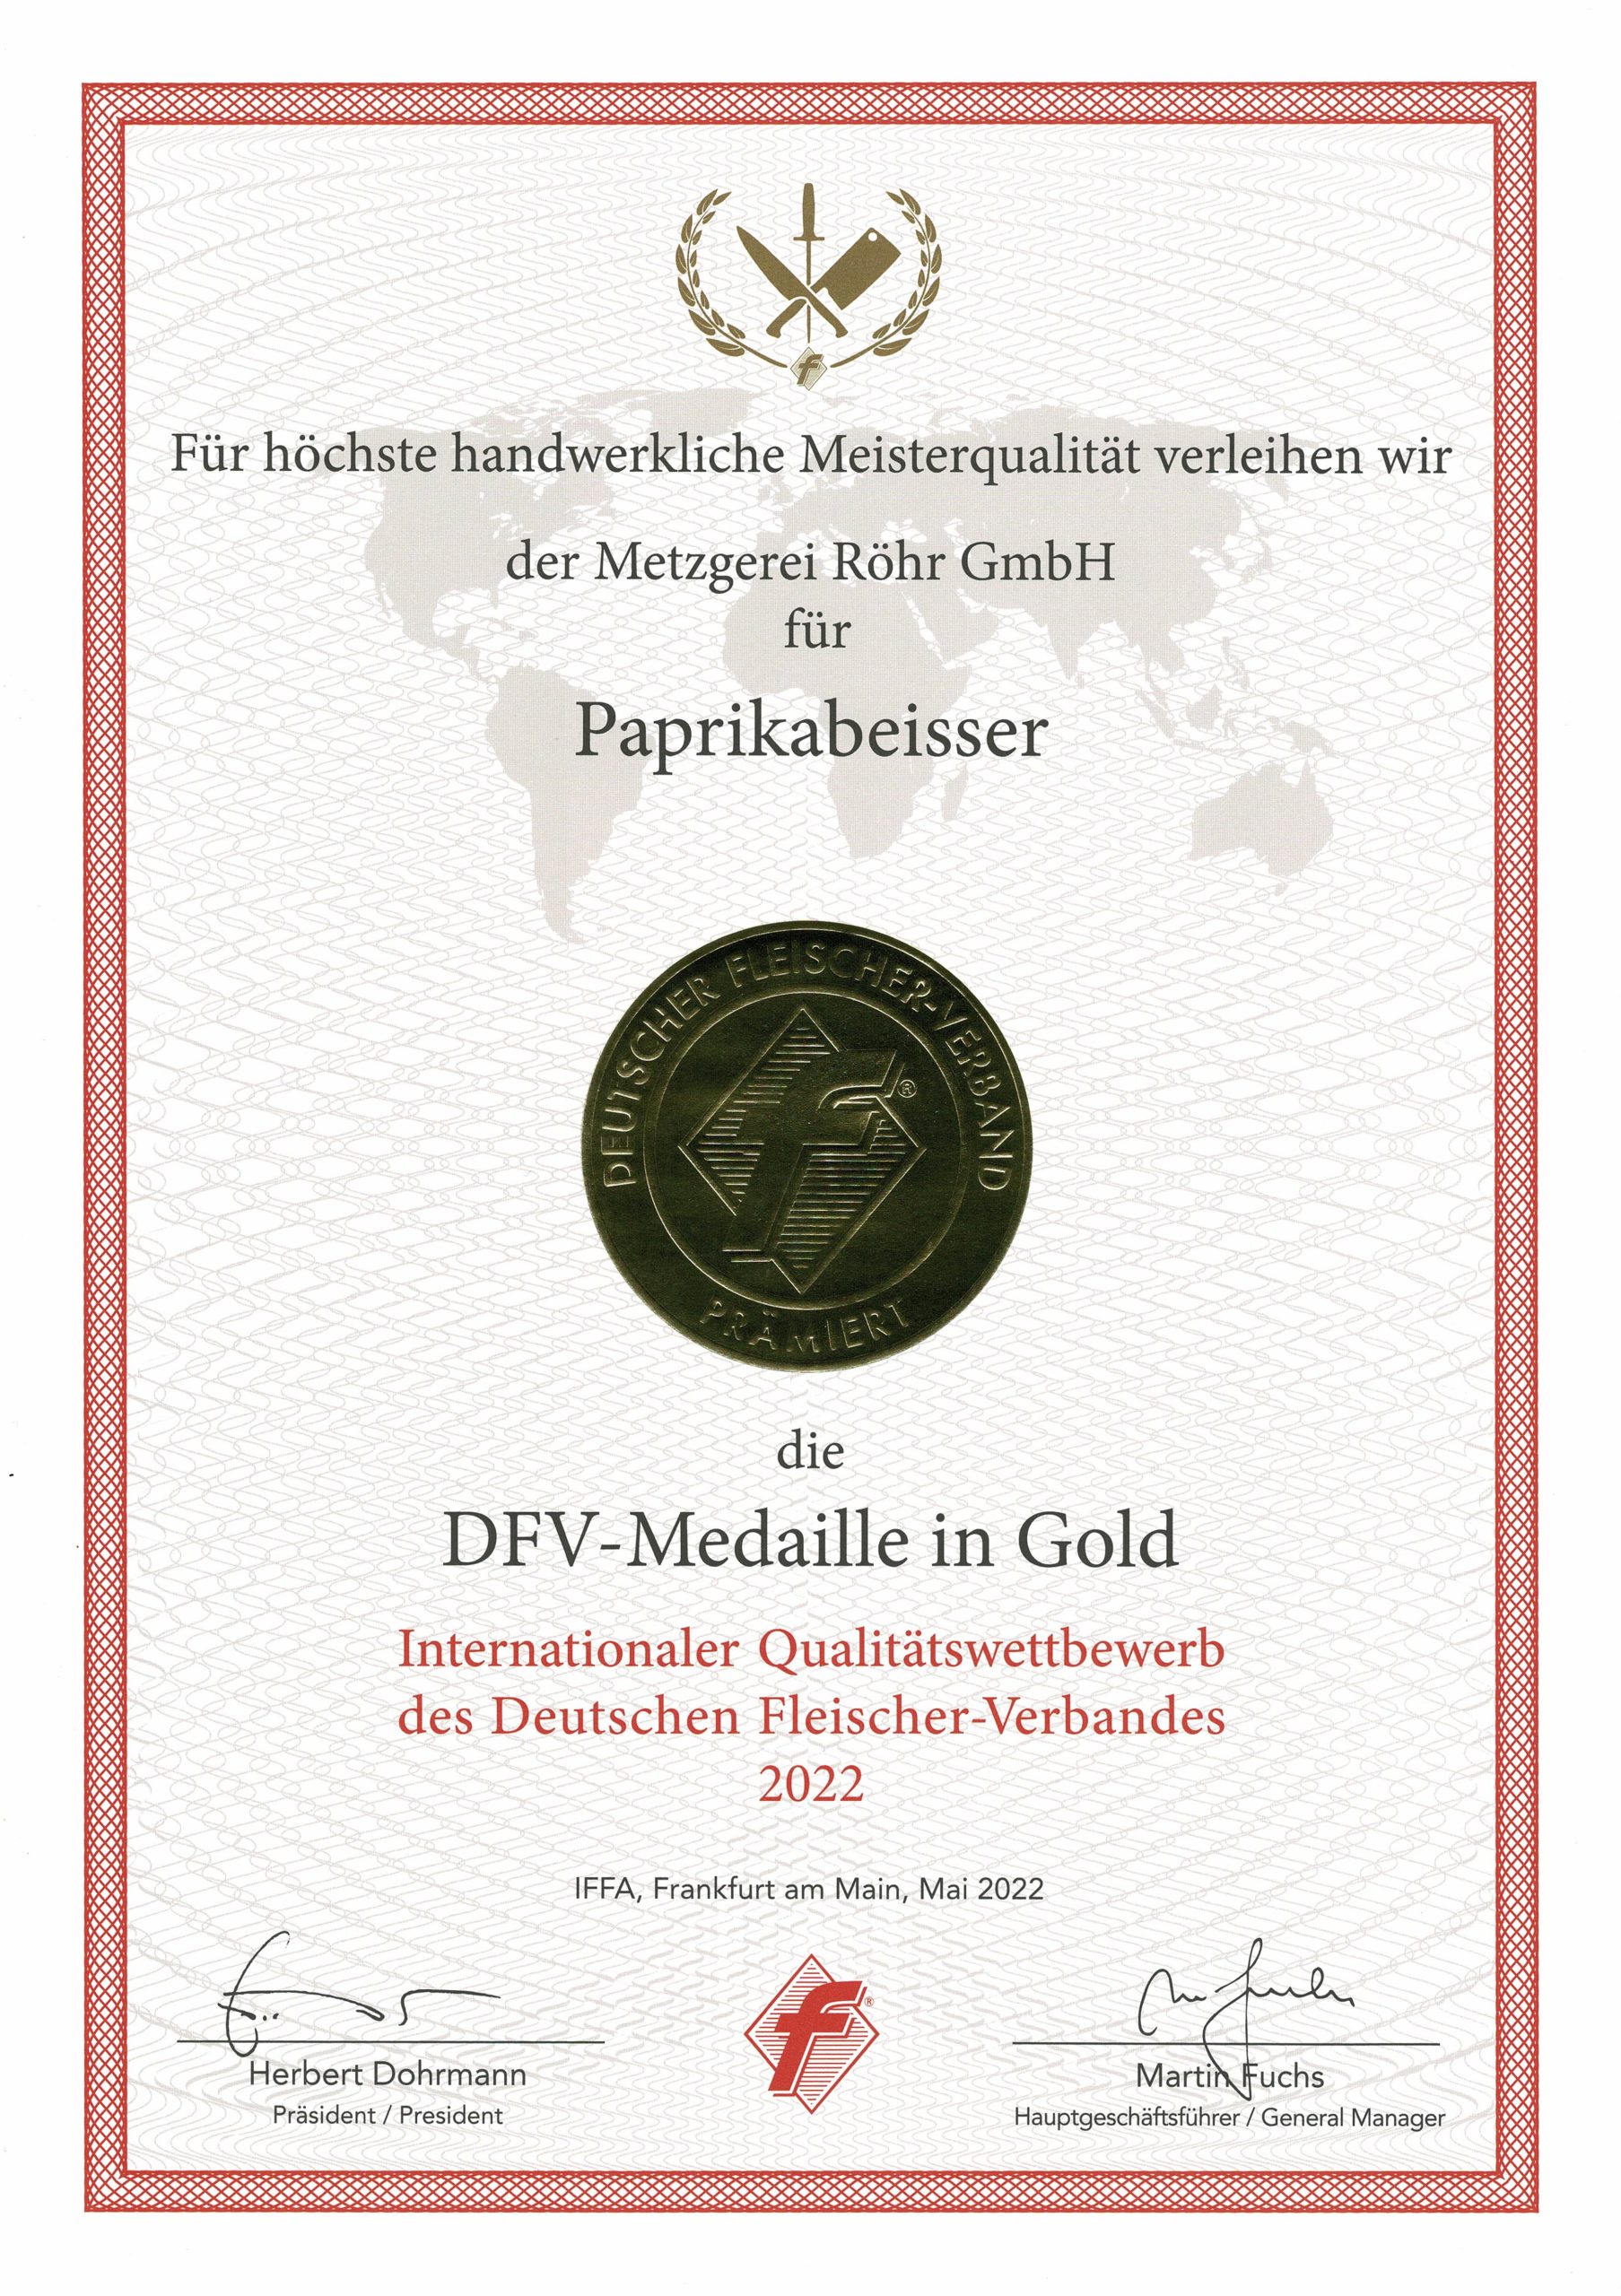 DFV-Medaille in Gold für Paprikabeisser